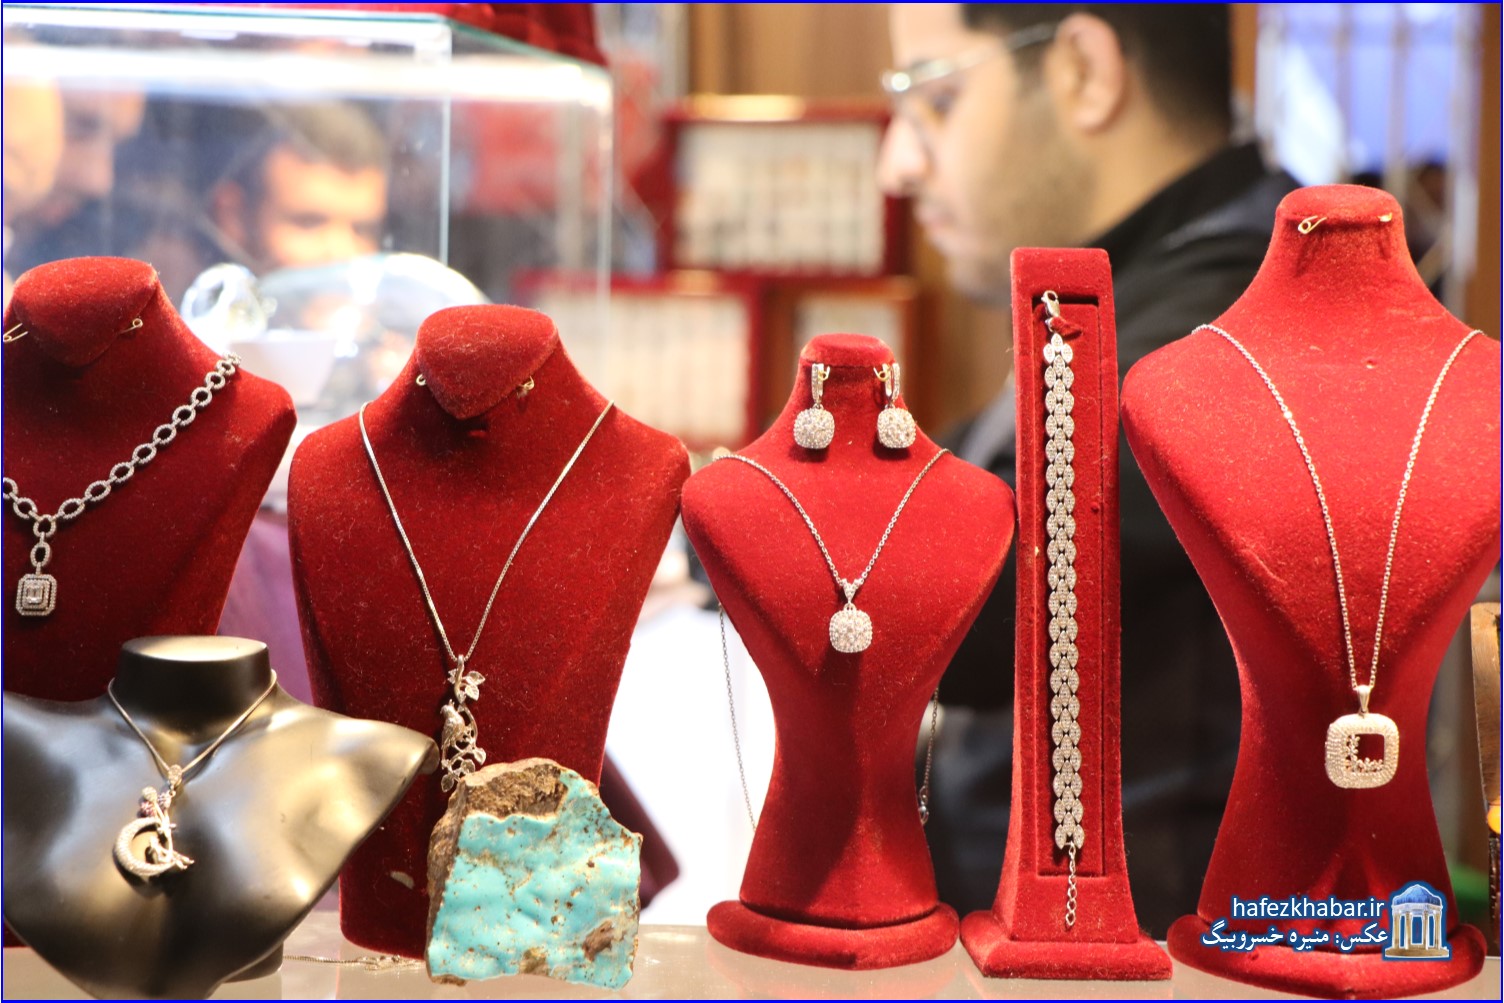 نمایشگاه طلا و جواهرات در شیراز/ عکس: منیره خسروبیگ